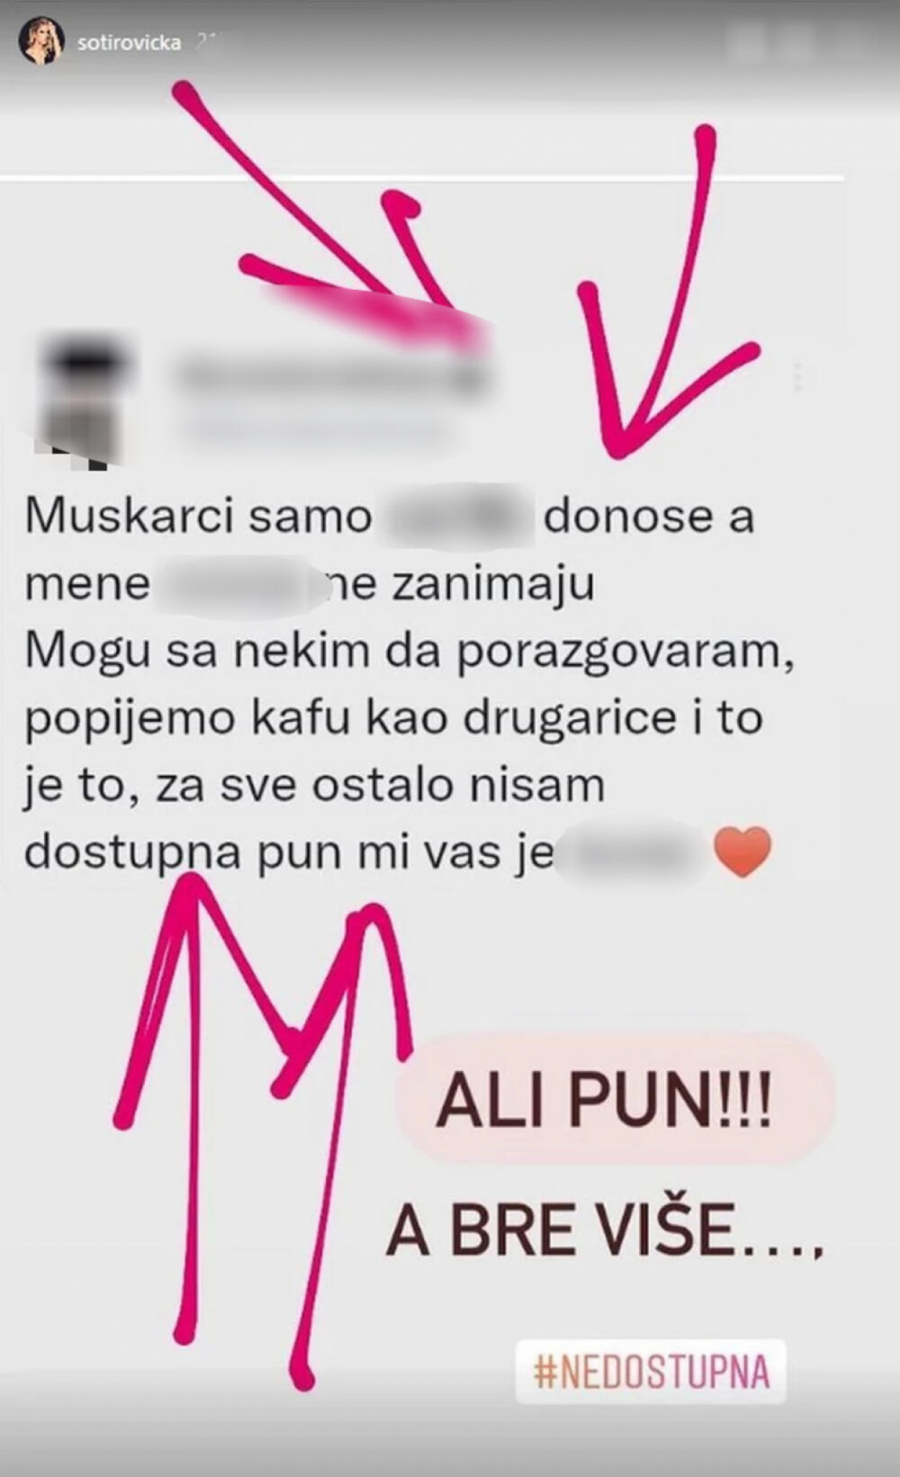 SMUČILI JOJ SE MUŠKARCI! Srpska pevačica objavila šok poruku na društvenim mrežama: Oni samo donose sr*nje!